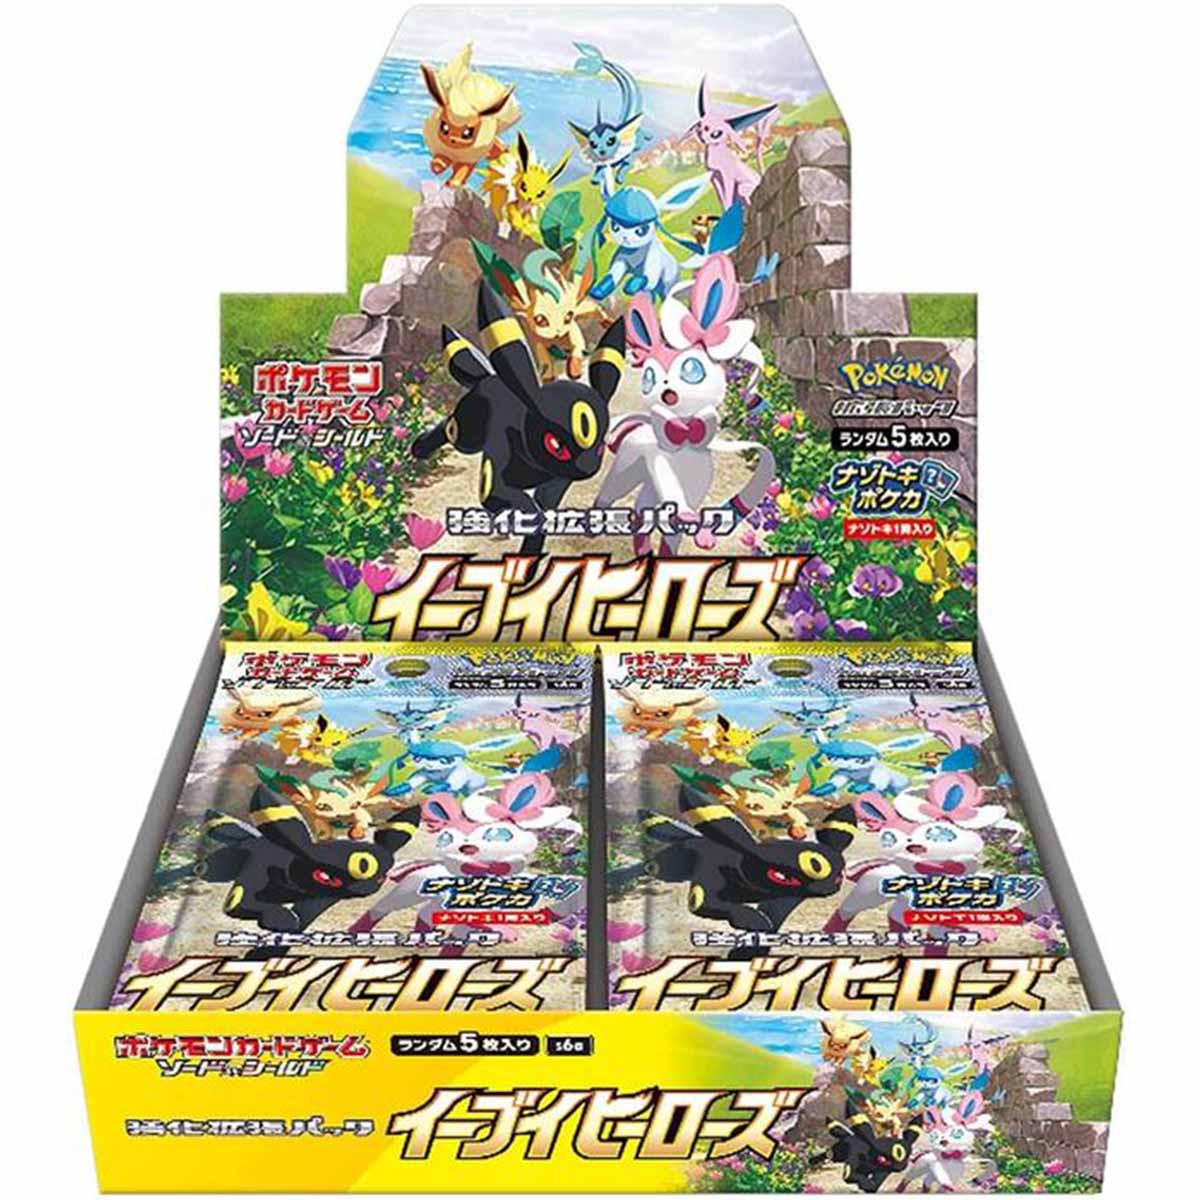 Pokémon Eevee Heroes (s6a) Booster Display - JPN